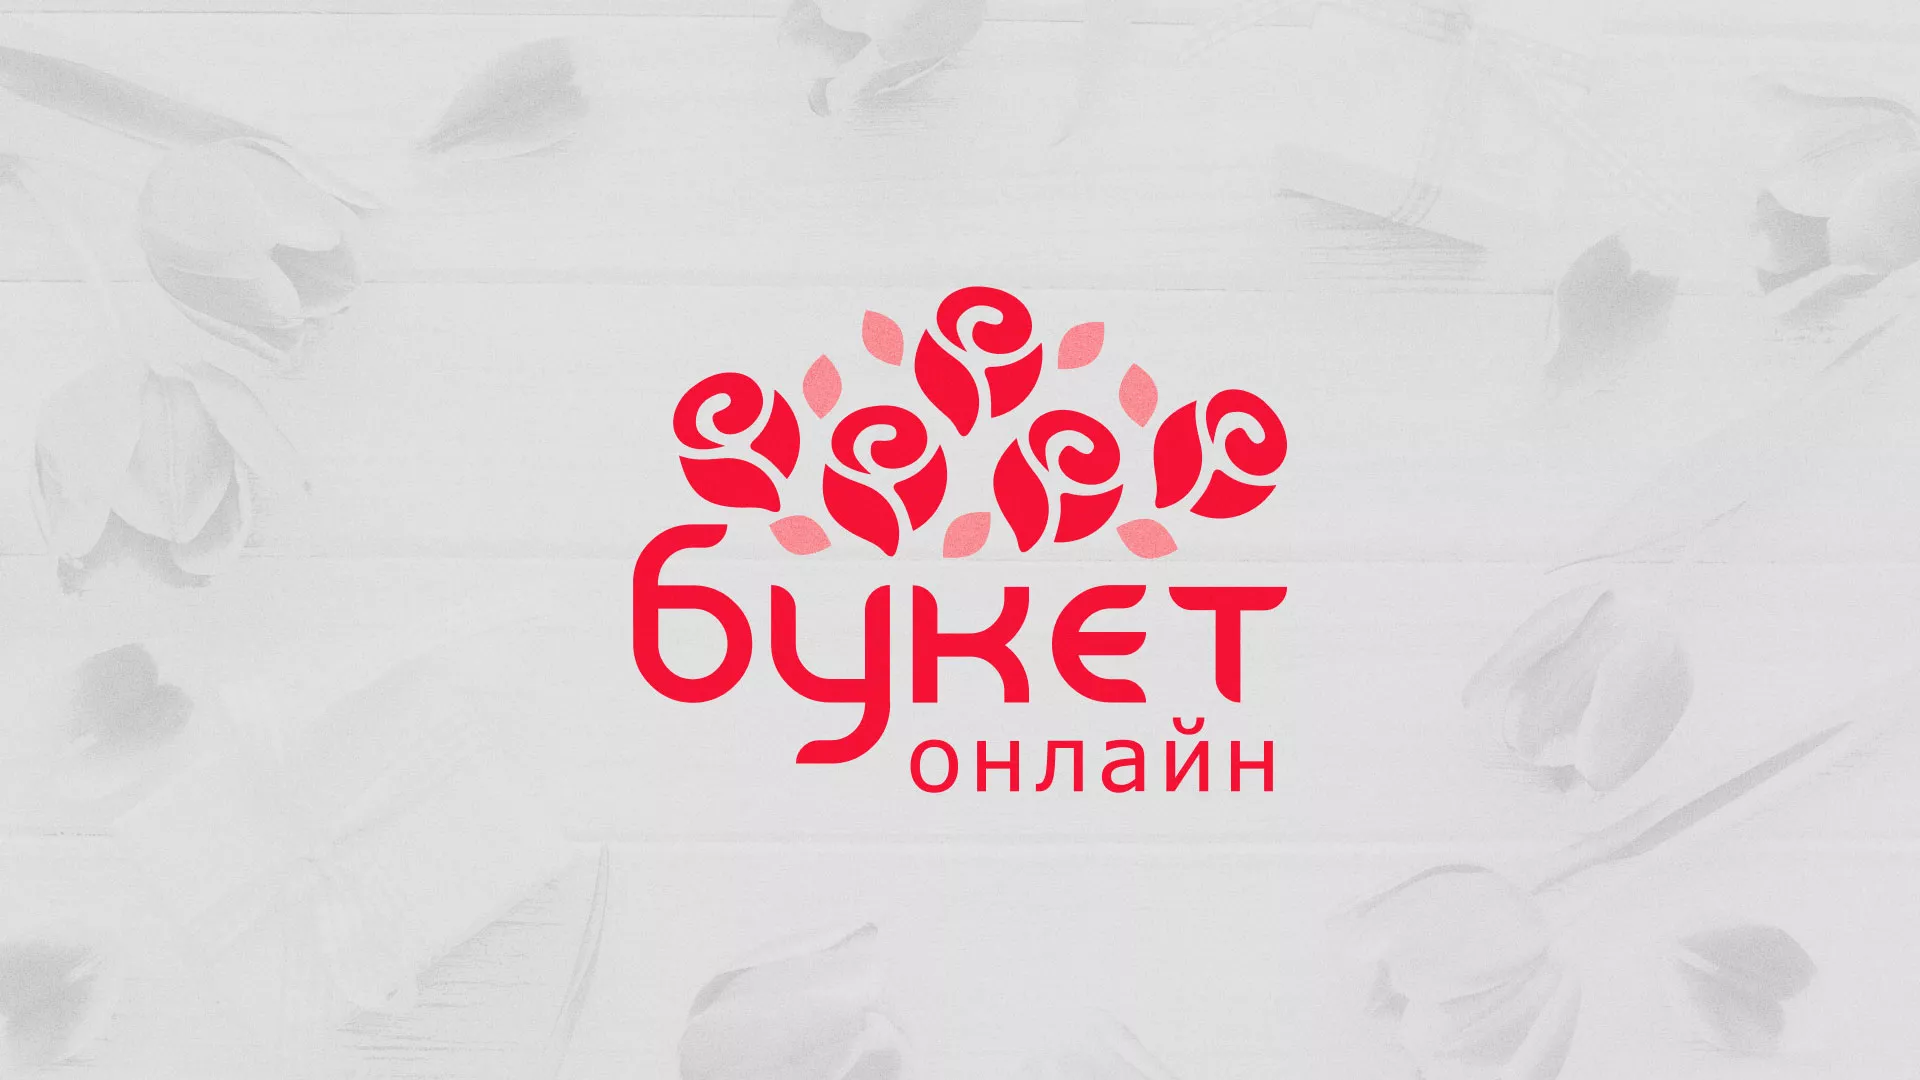 Создание интернет-магазина «Букет-онлайн» по цветам в Комсомольске